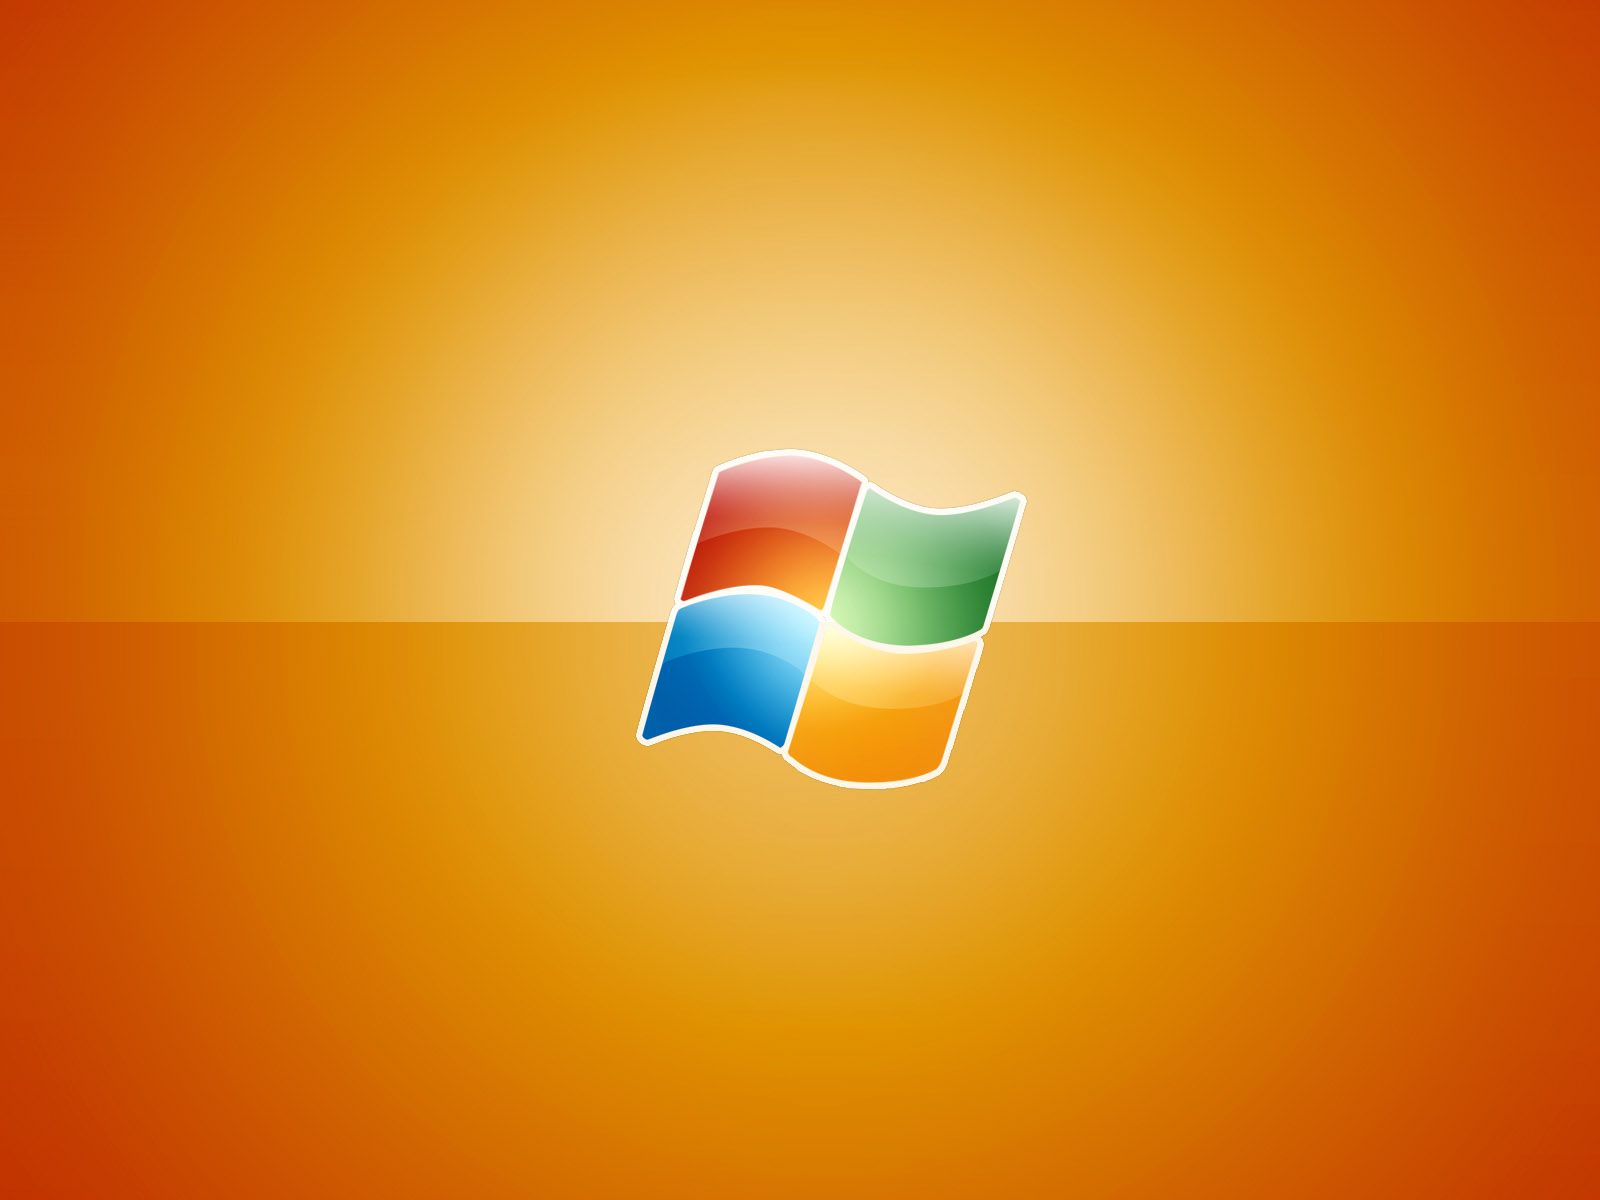 Yellow Windows Vista Logo Wallpaper Desktop #5635 Wallpaper | High ...